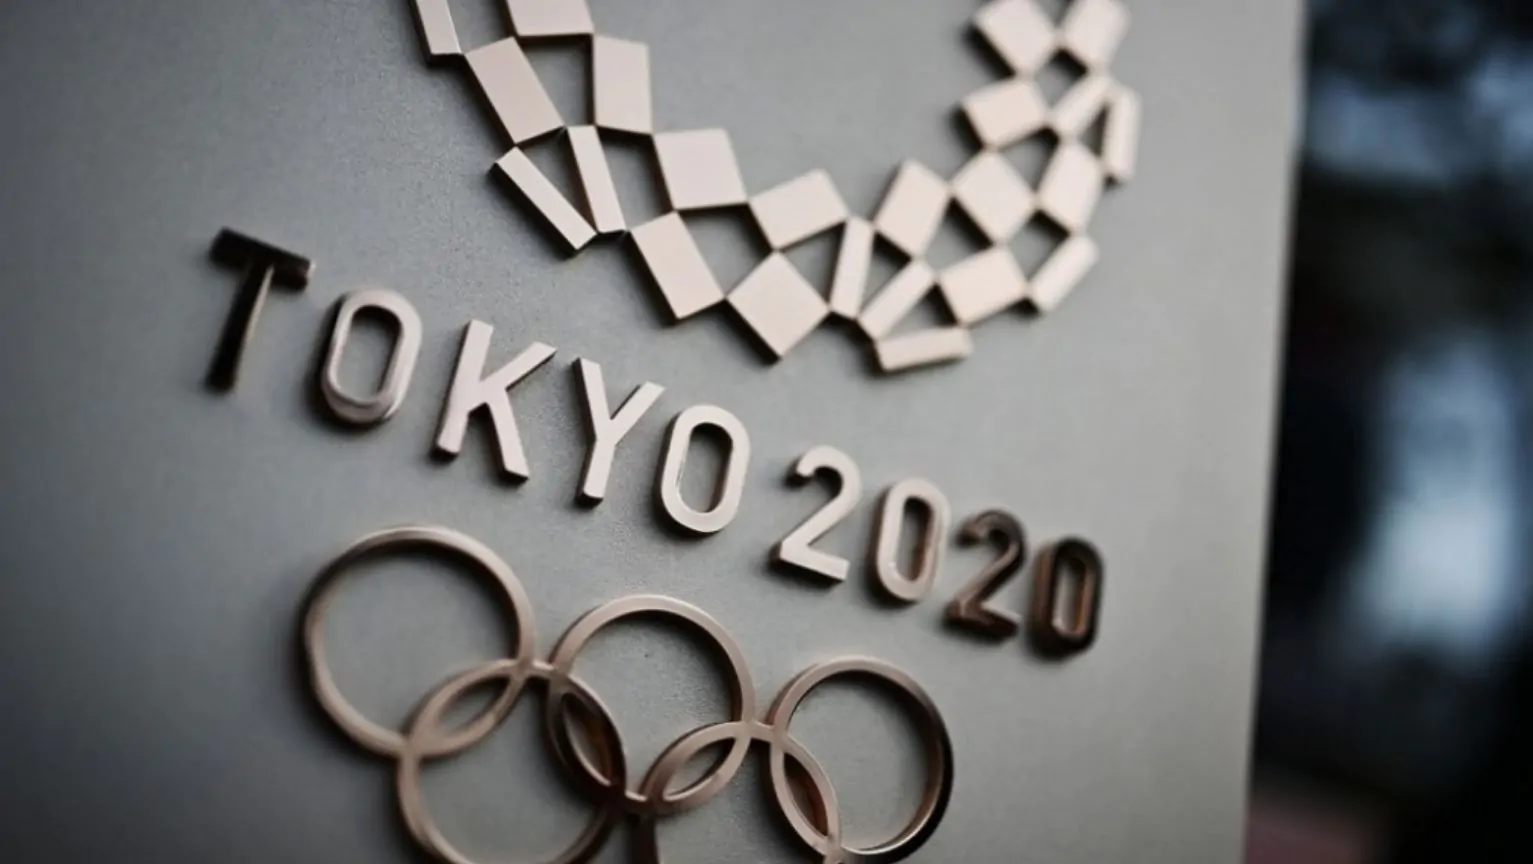 olimpiadi tokyo 2020 calendario